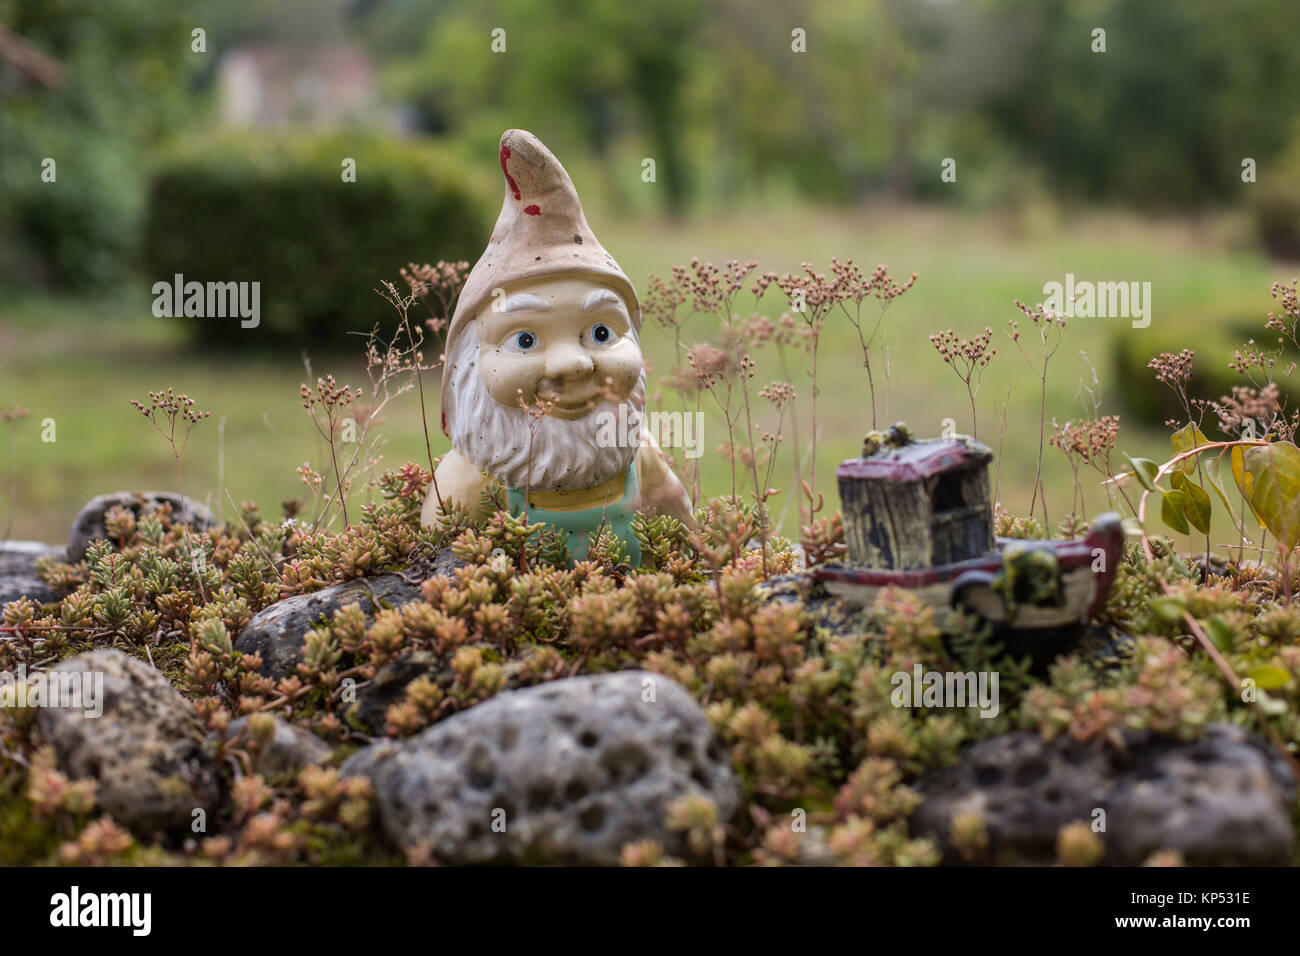 Garden gnome. Stock Photo